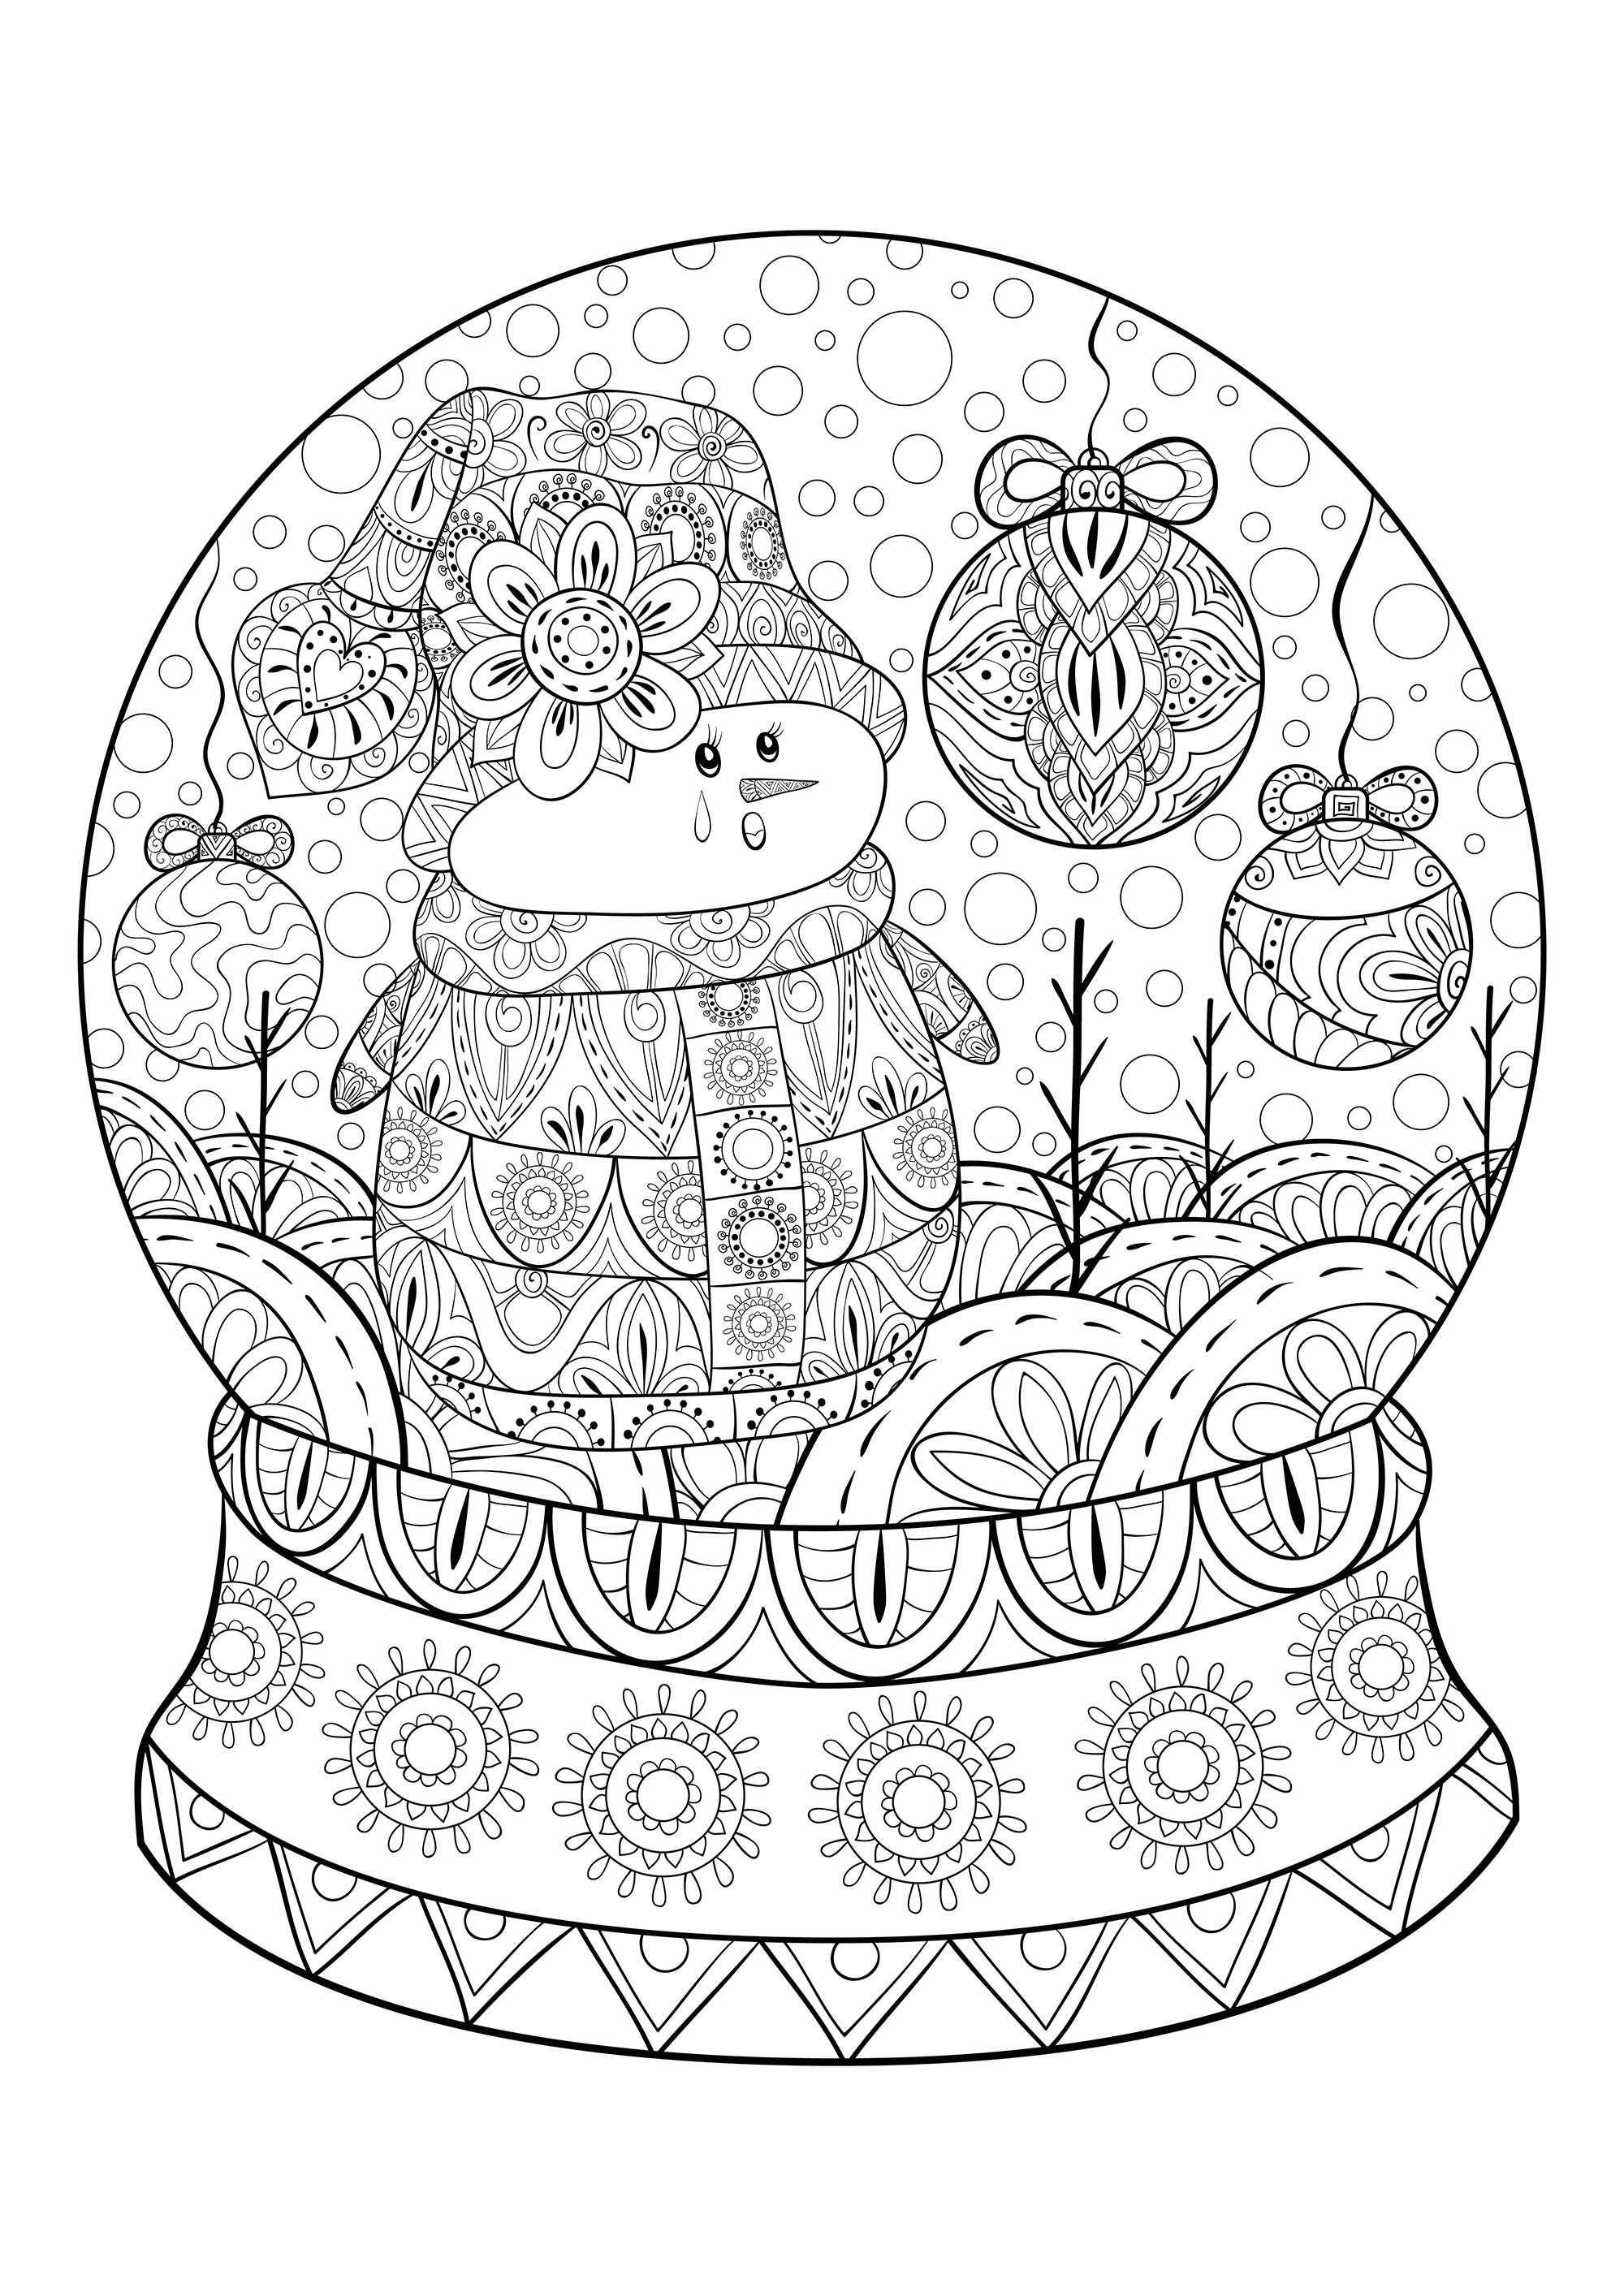 Um boneco de neve numa bola de Natal, com muitos elementos e motivos